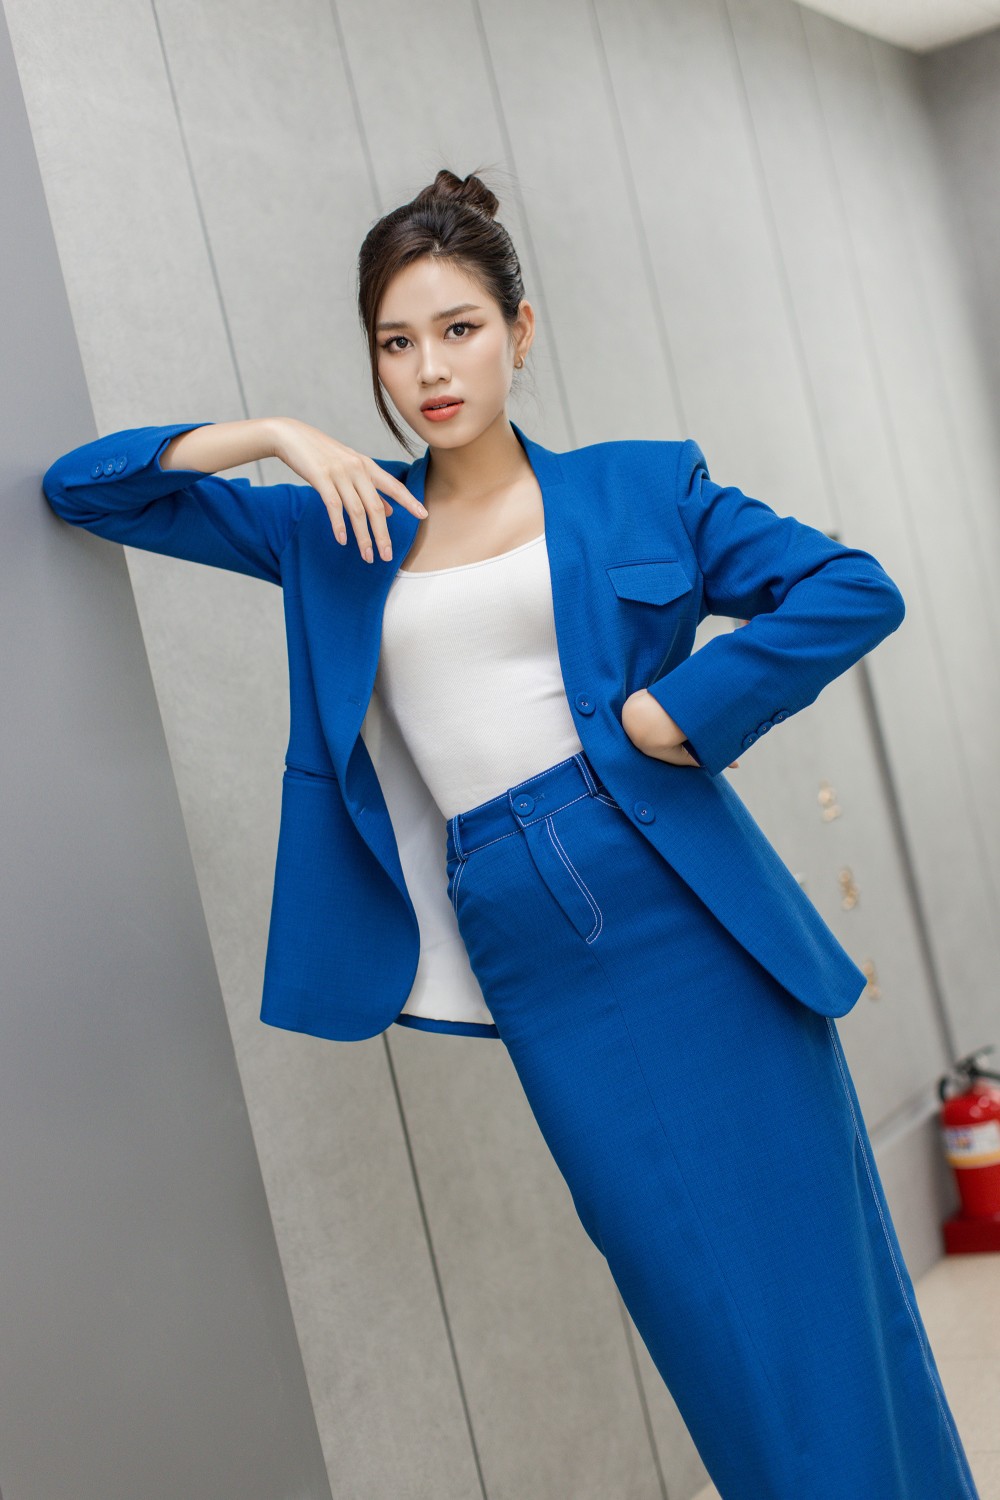 Hoa hậu Đỗ Thị Hà lên đồ đẹp chuẩn nữ CEO ở tuổi 22 - 1